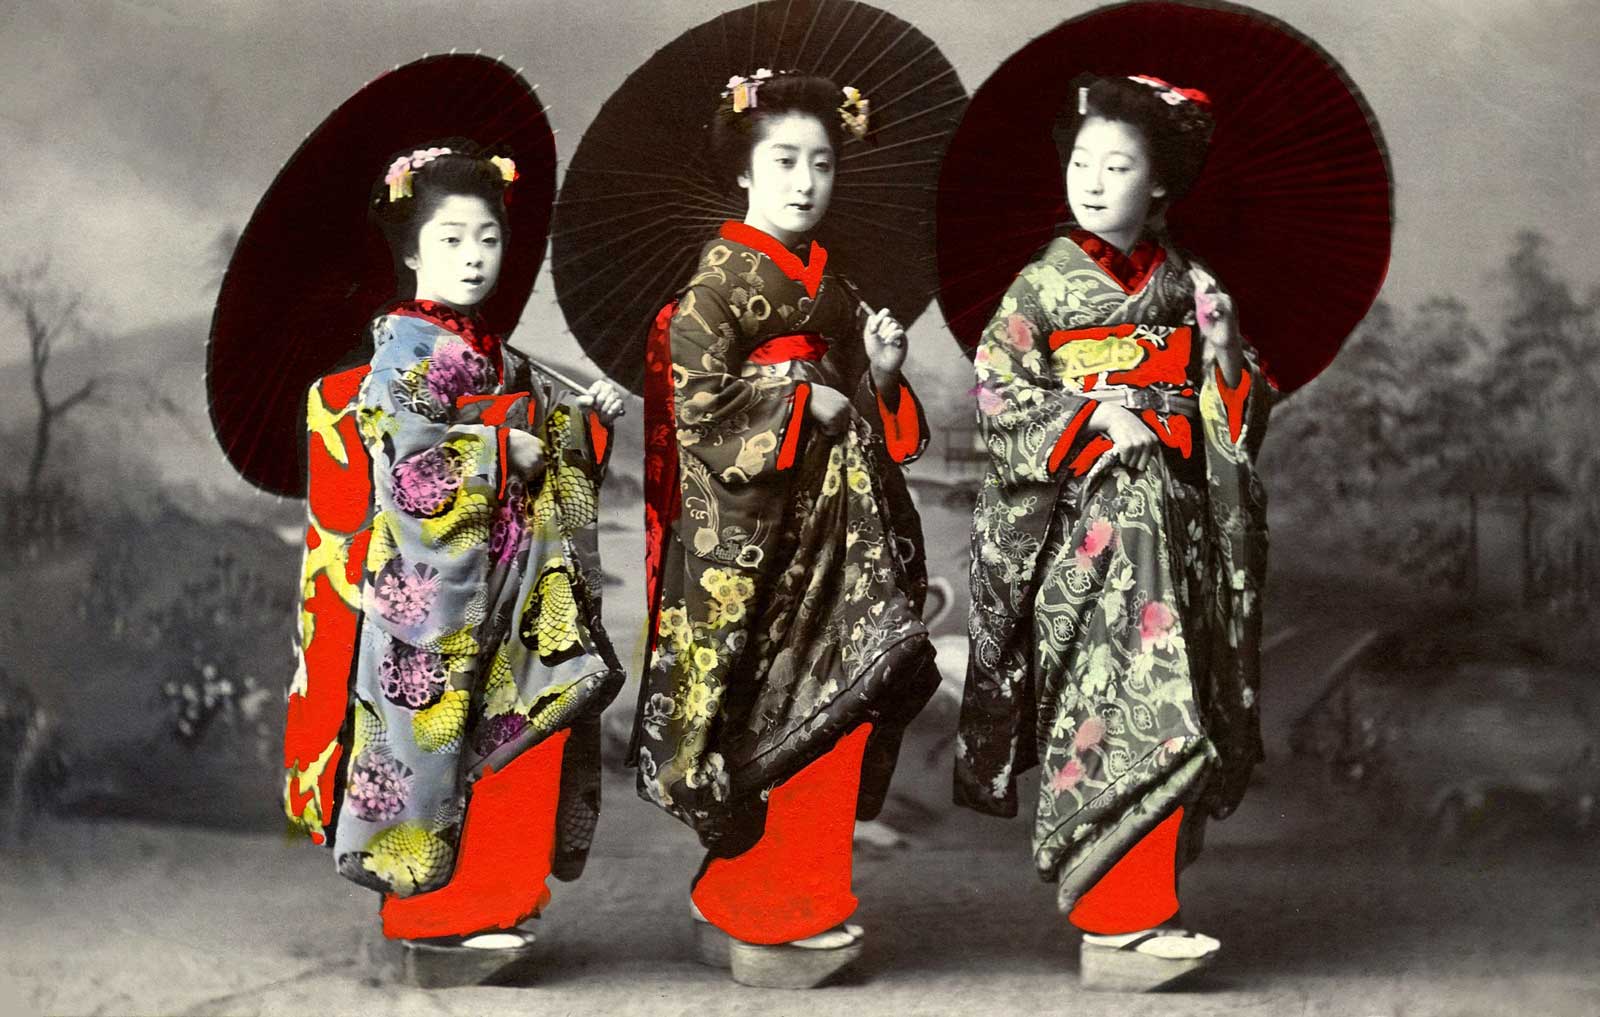 imagen de 3 niñas geishas en la antigüedad